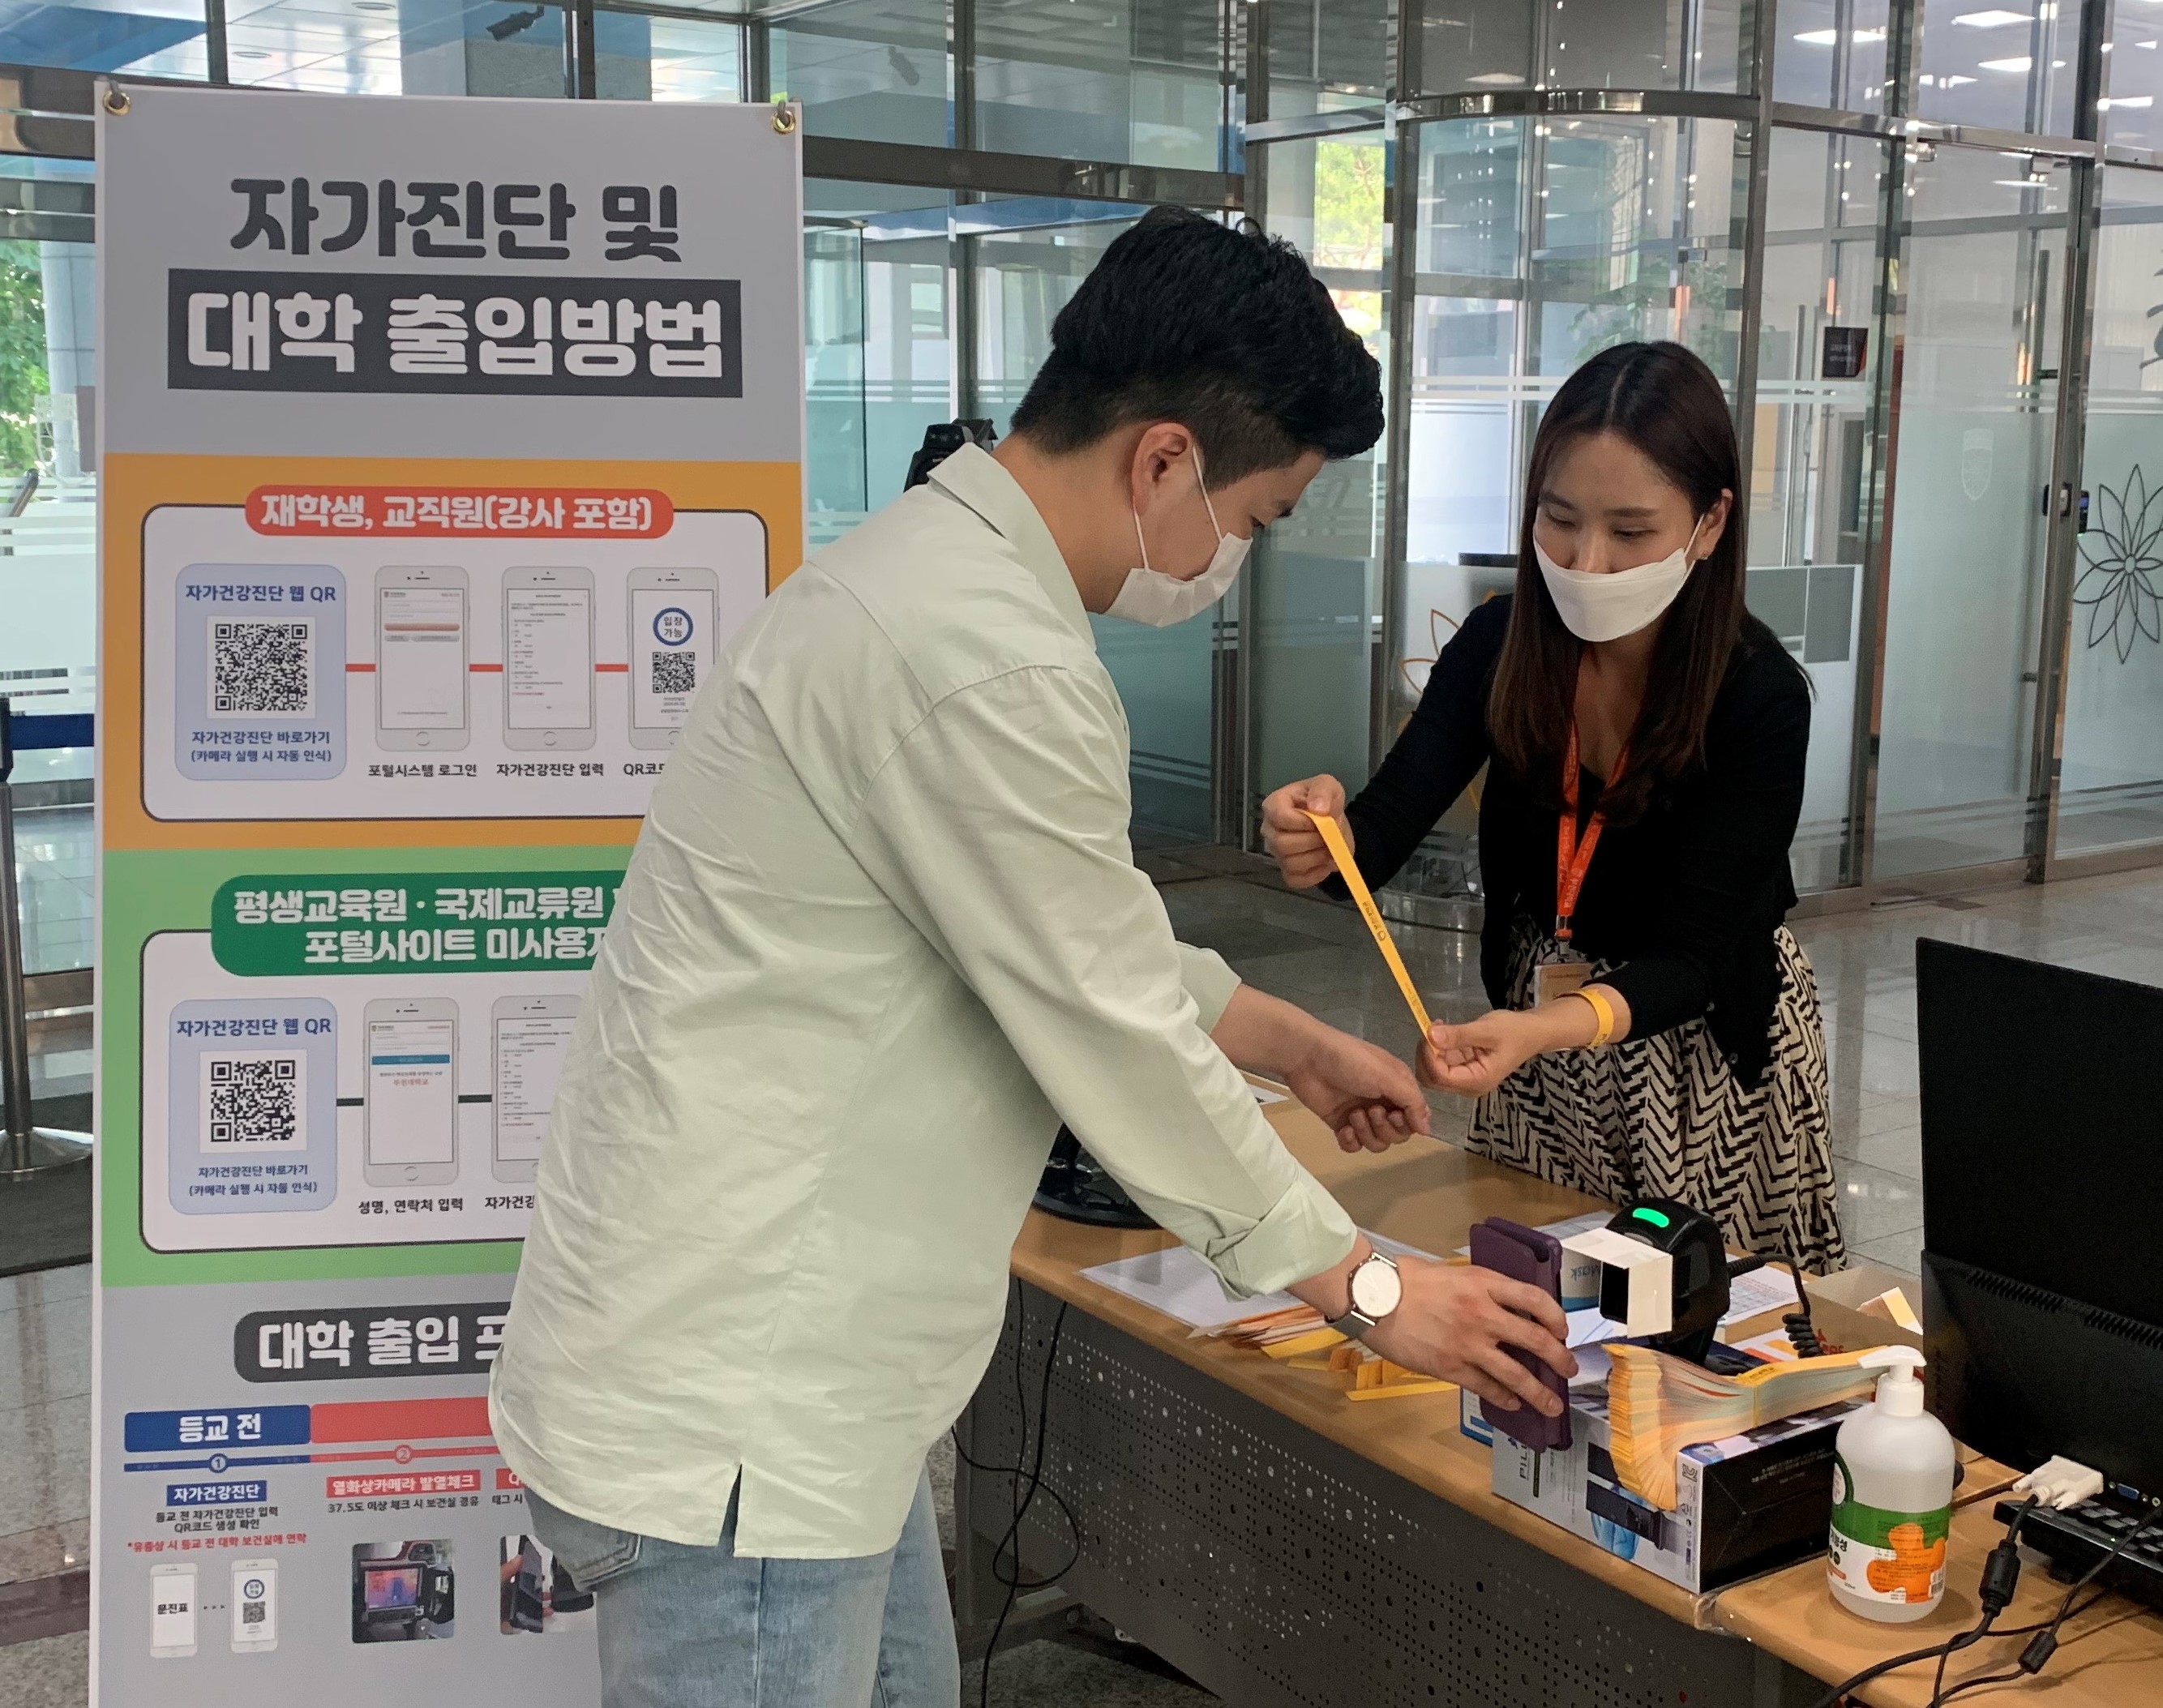 부천대학교, 코로나19 감염병 예방 및 확산 방지를 위한 ‘자가건강진단 웹’ 운영